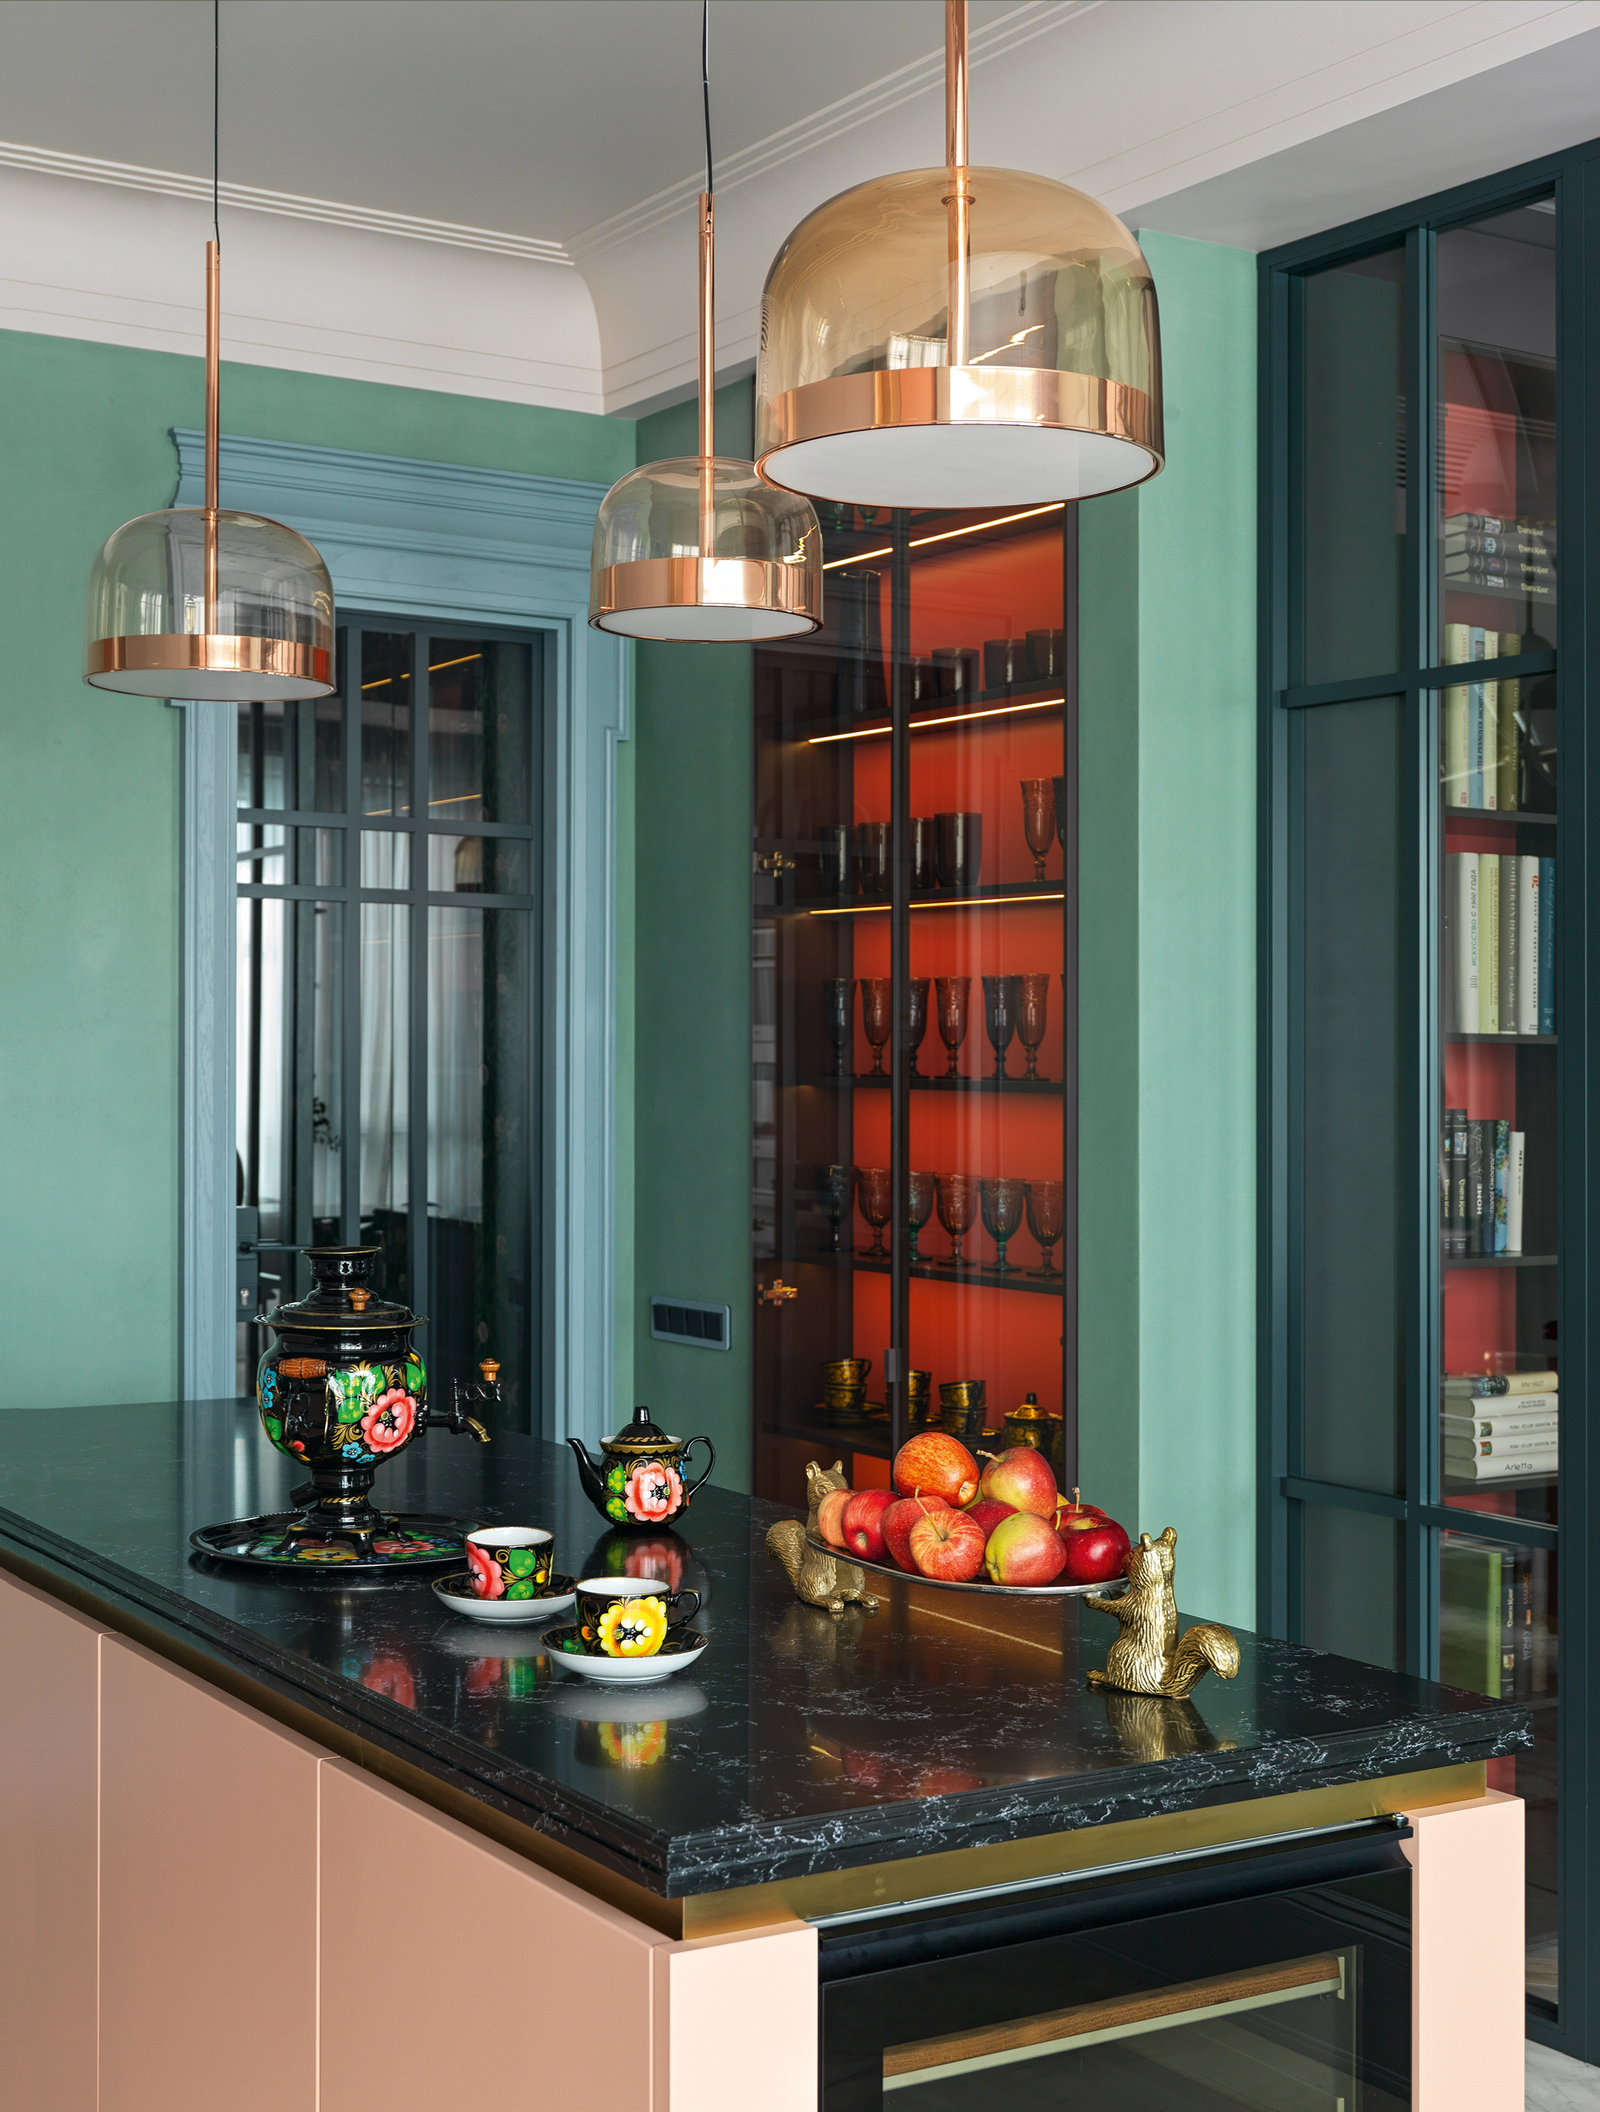 Кухня сделана по эскизам дизайнеров на фабрике Orange Park светильники FontanaArte электроустановочные изделия Gira...